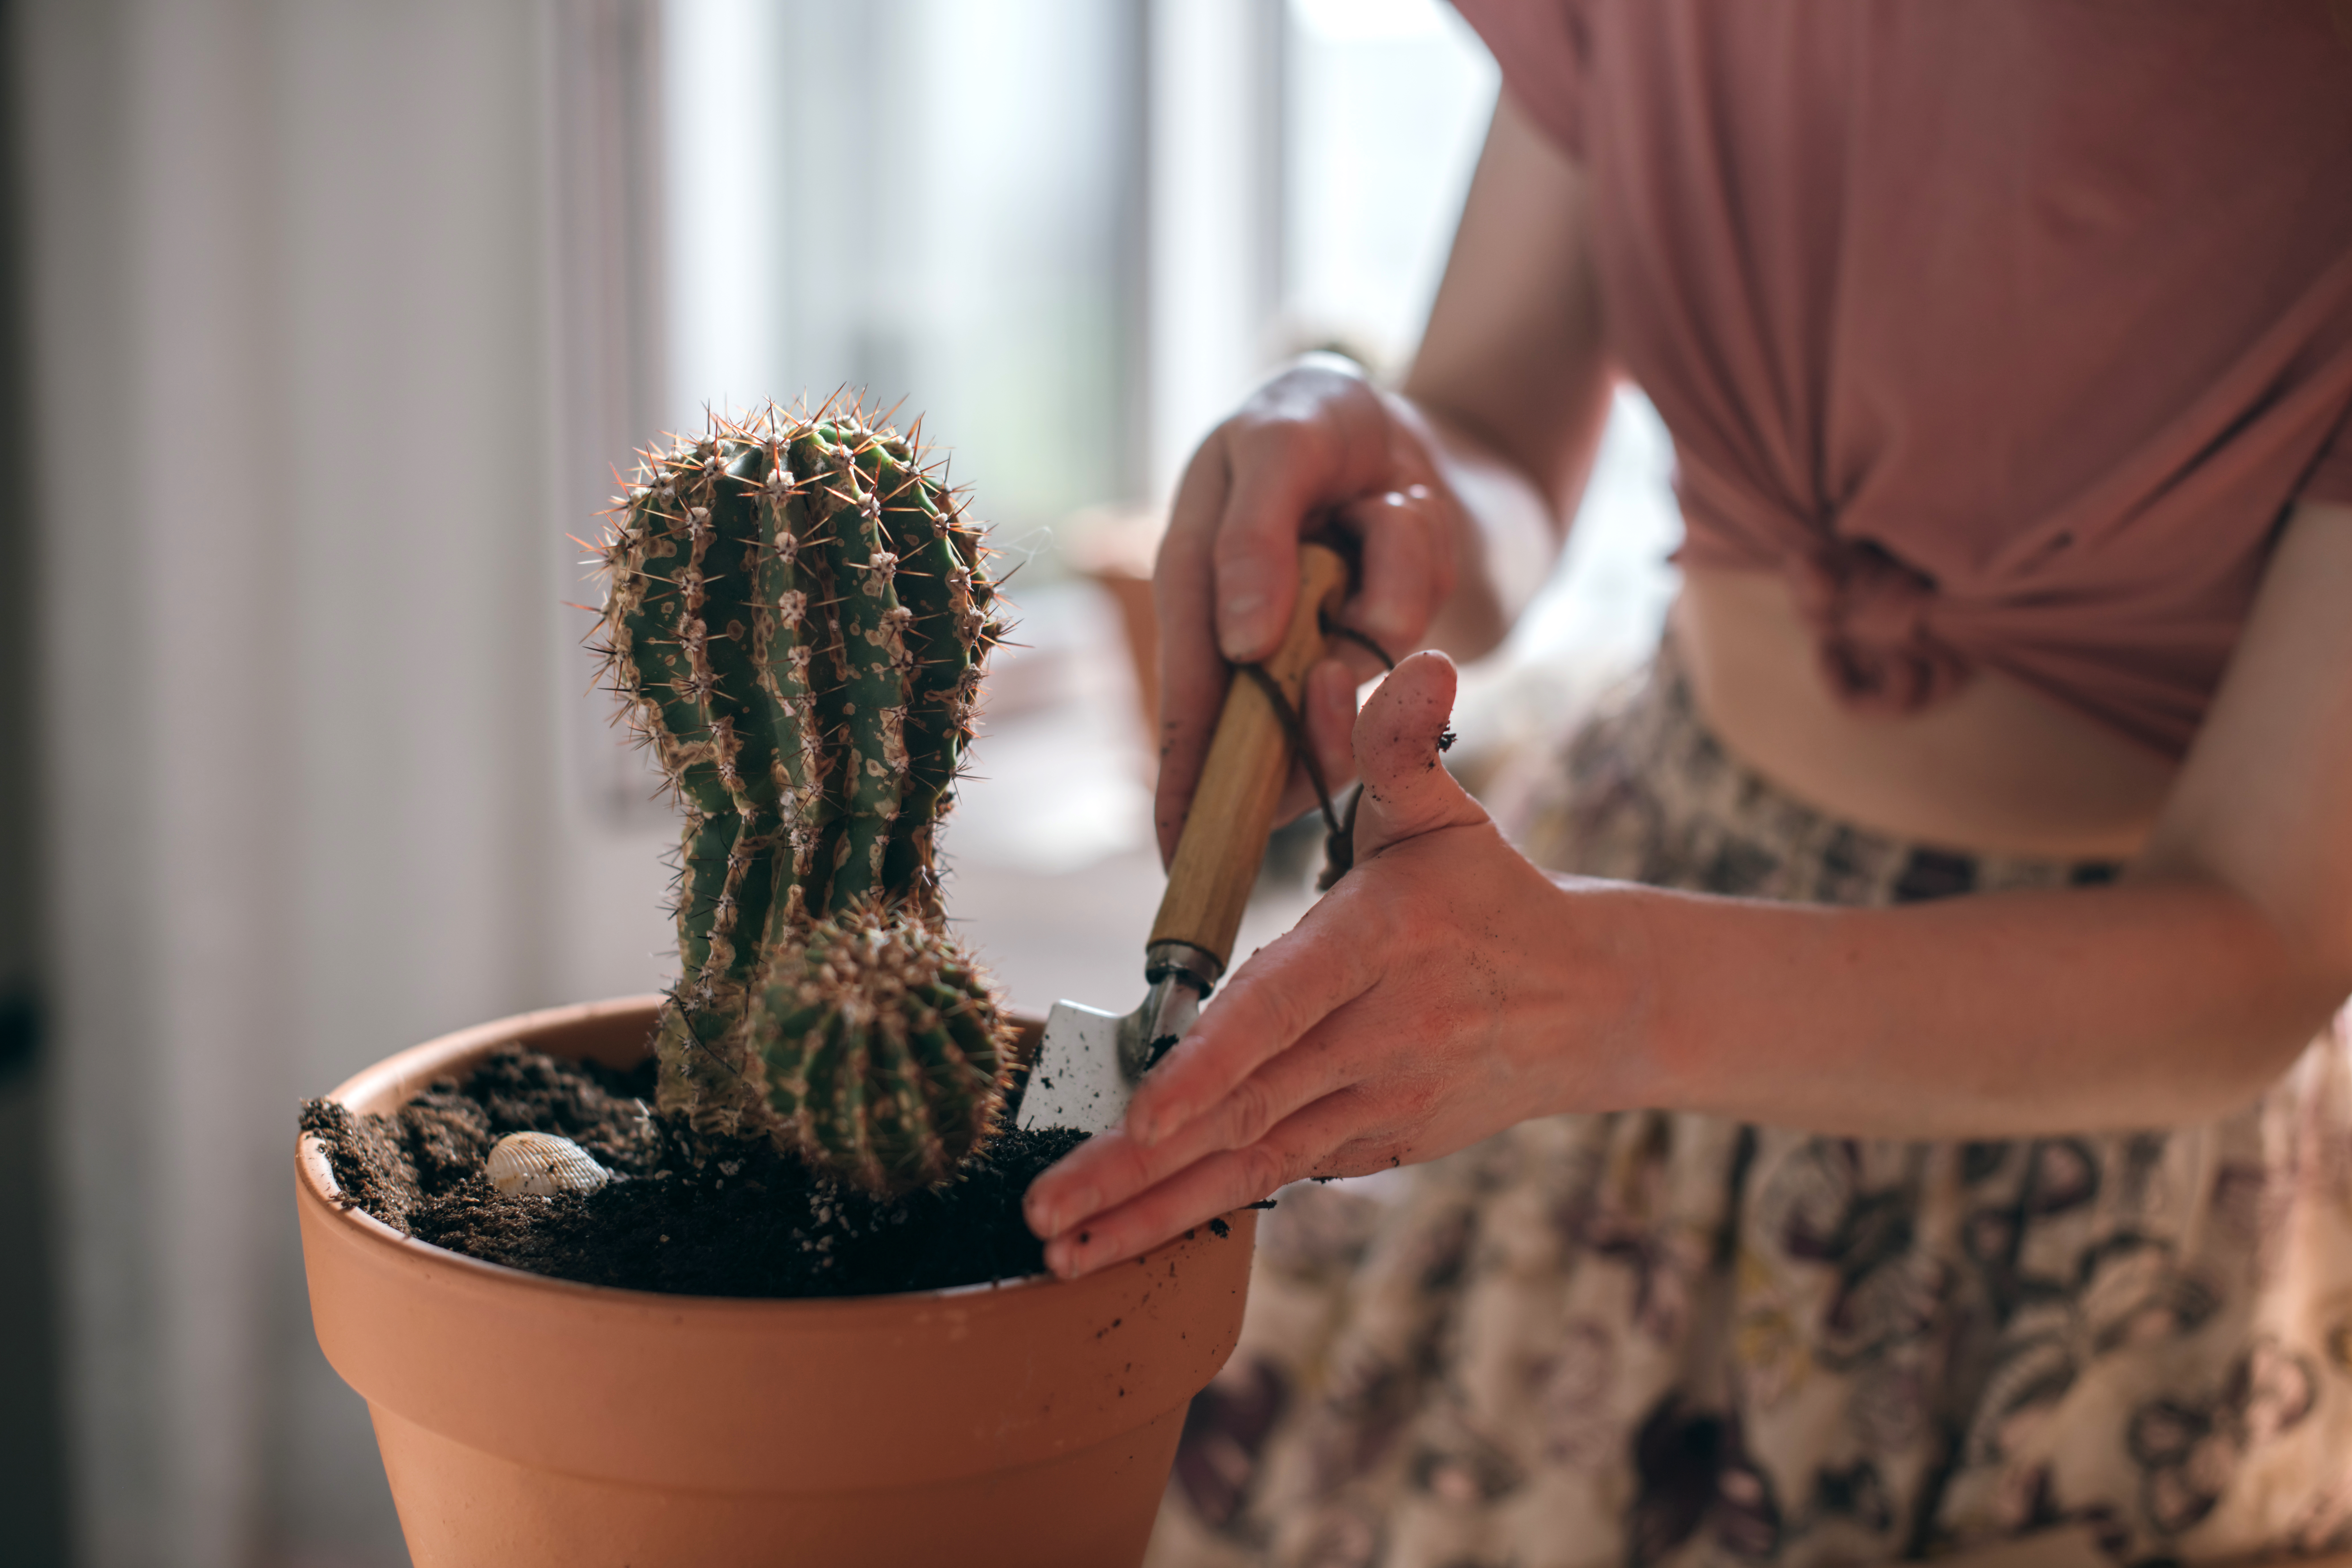 Femme qui rempote un cactus sans porter des gants.